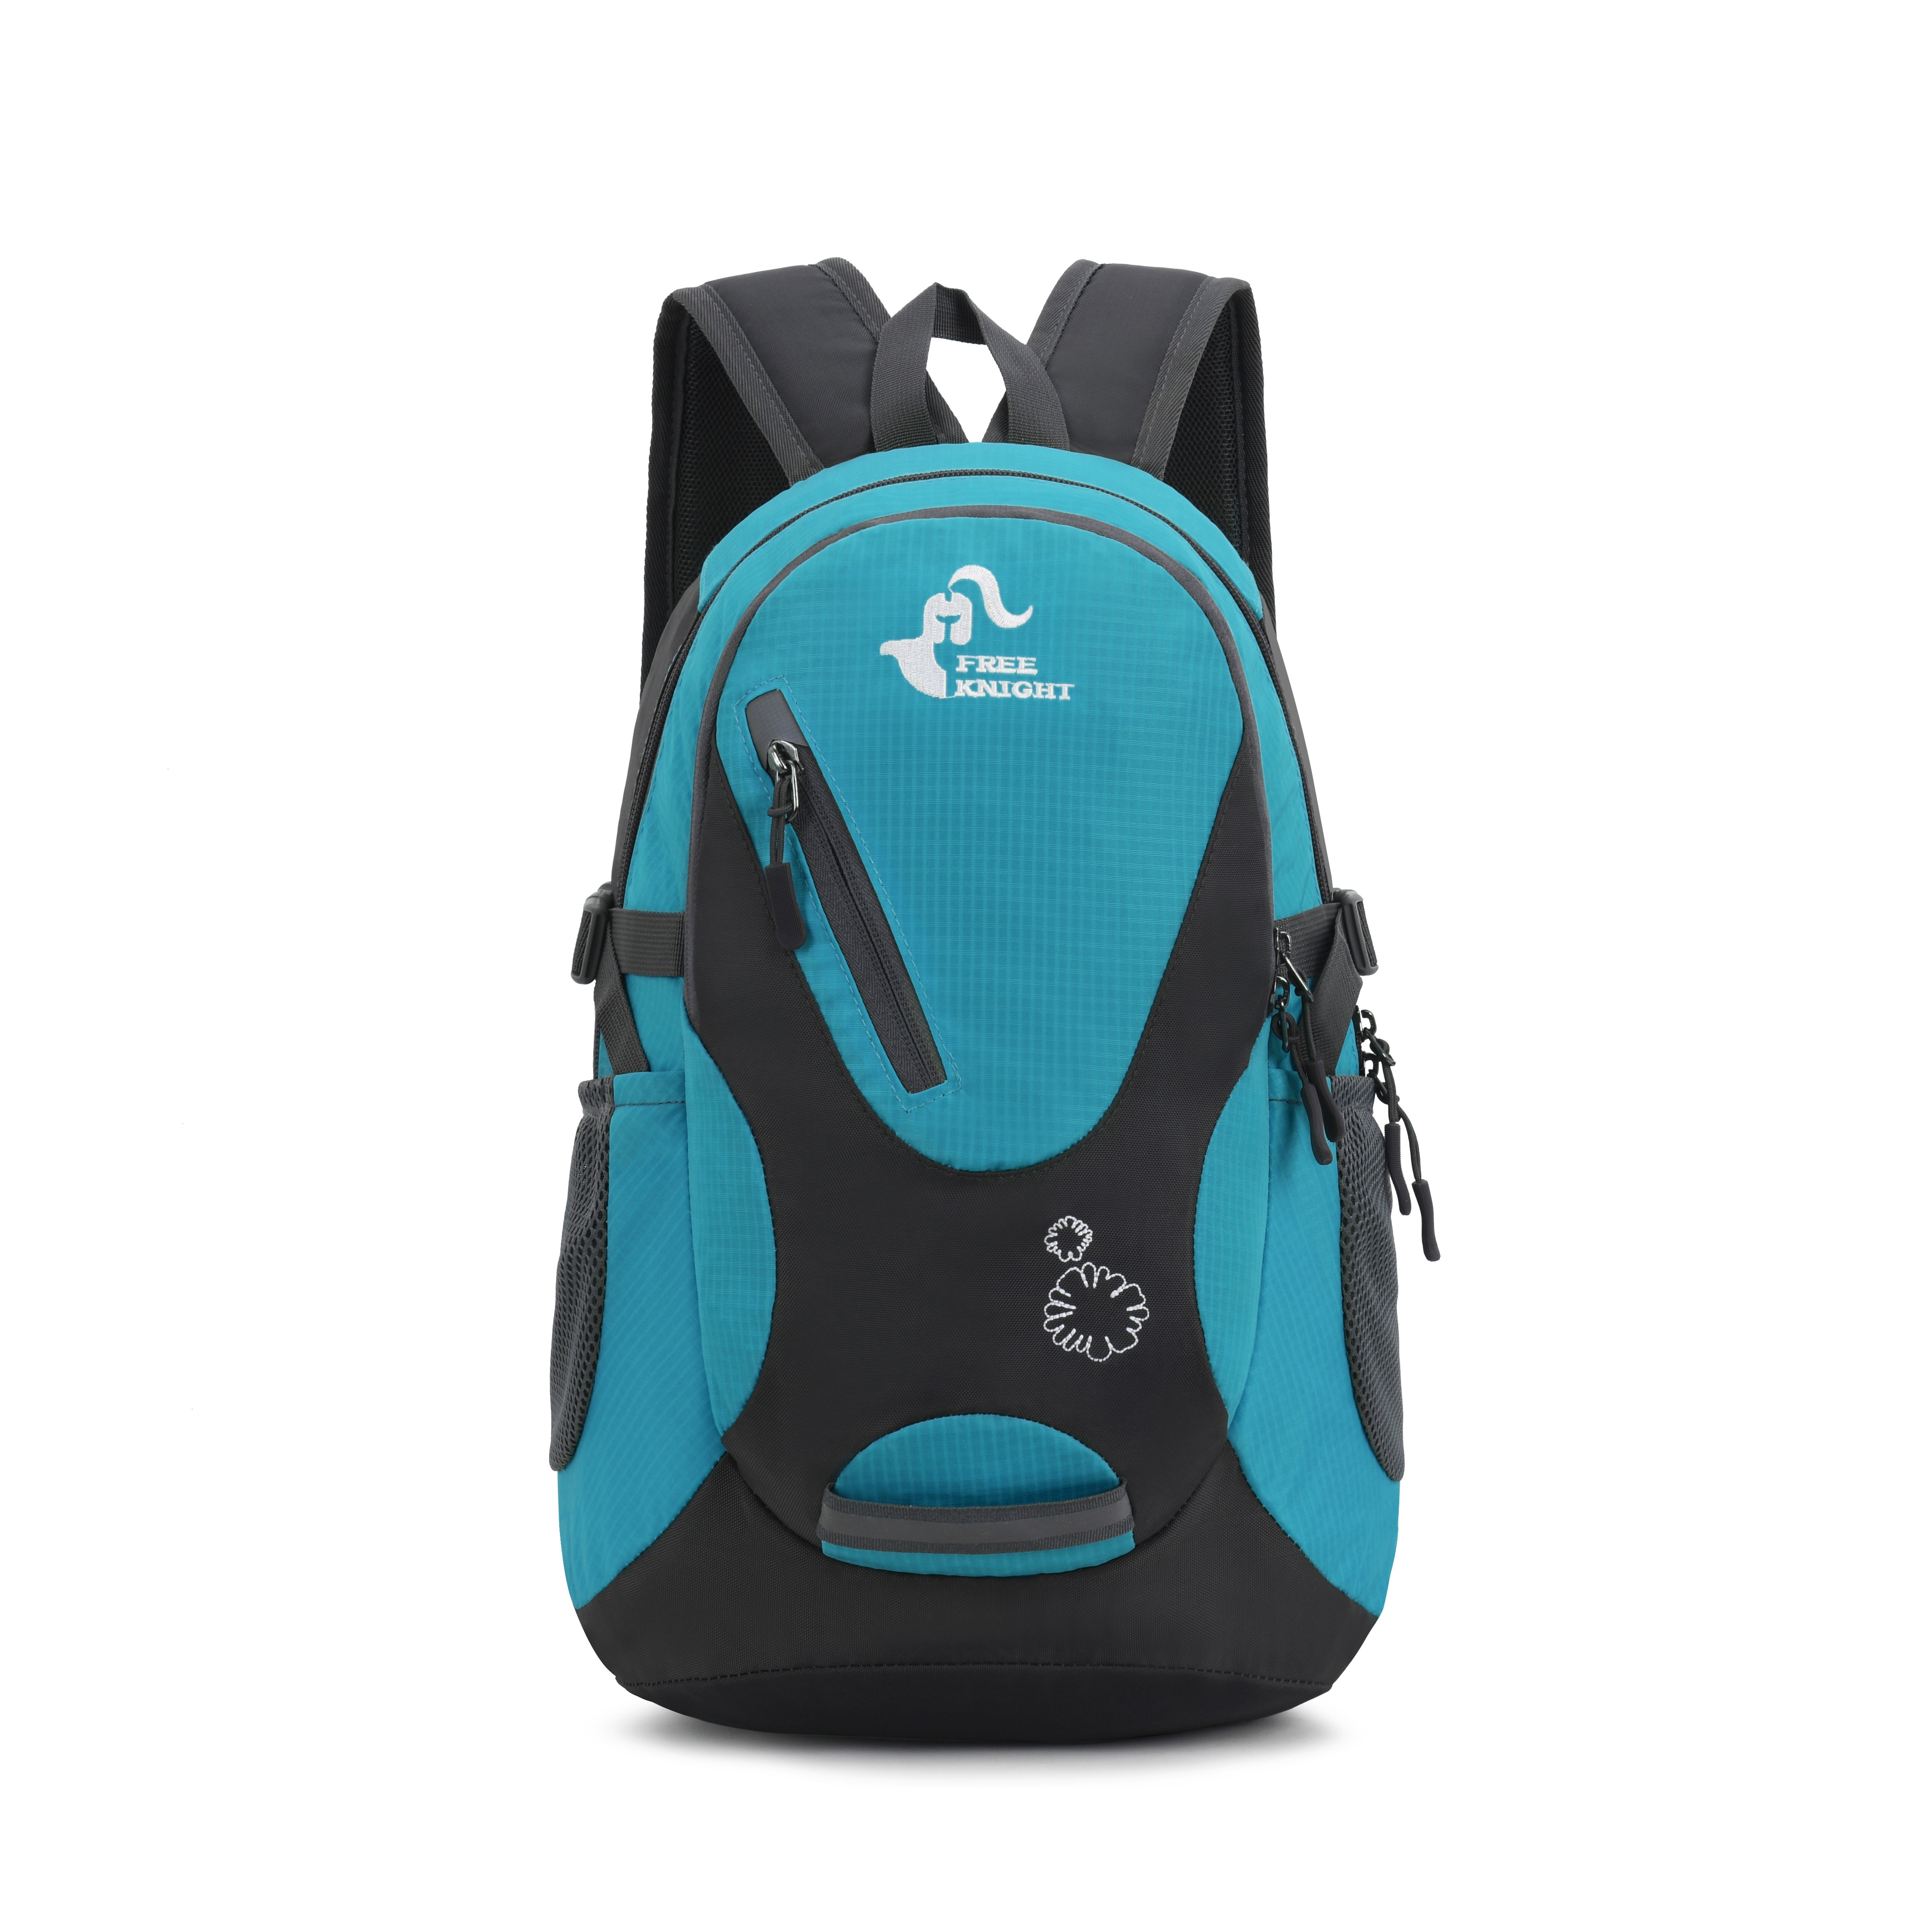 FreeKnight 60L Waterproof Lightweight Hiking Backpack